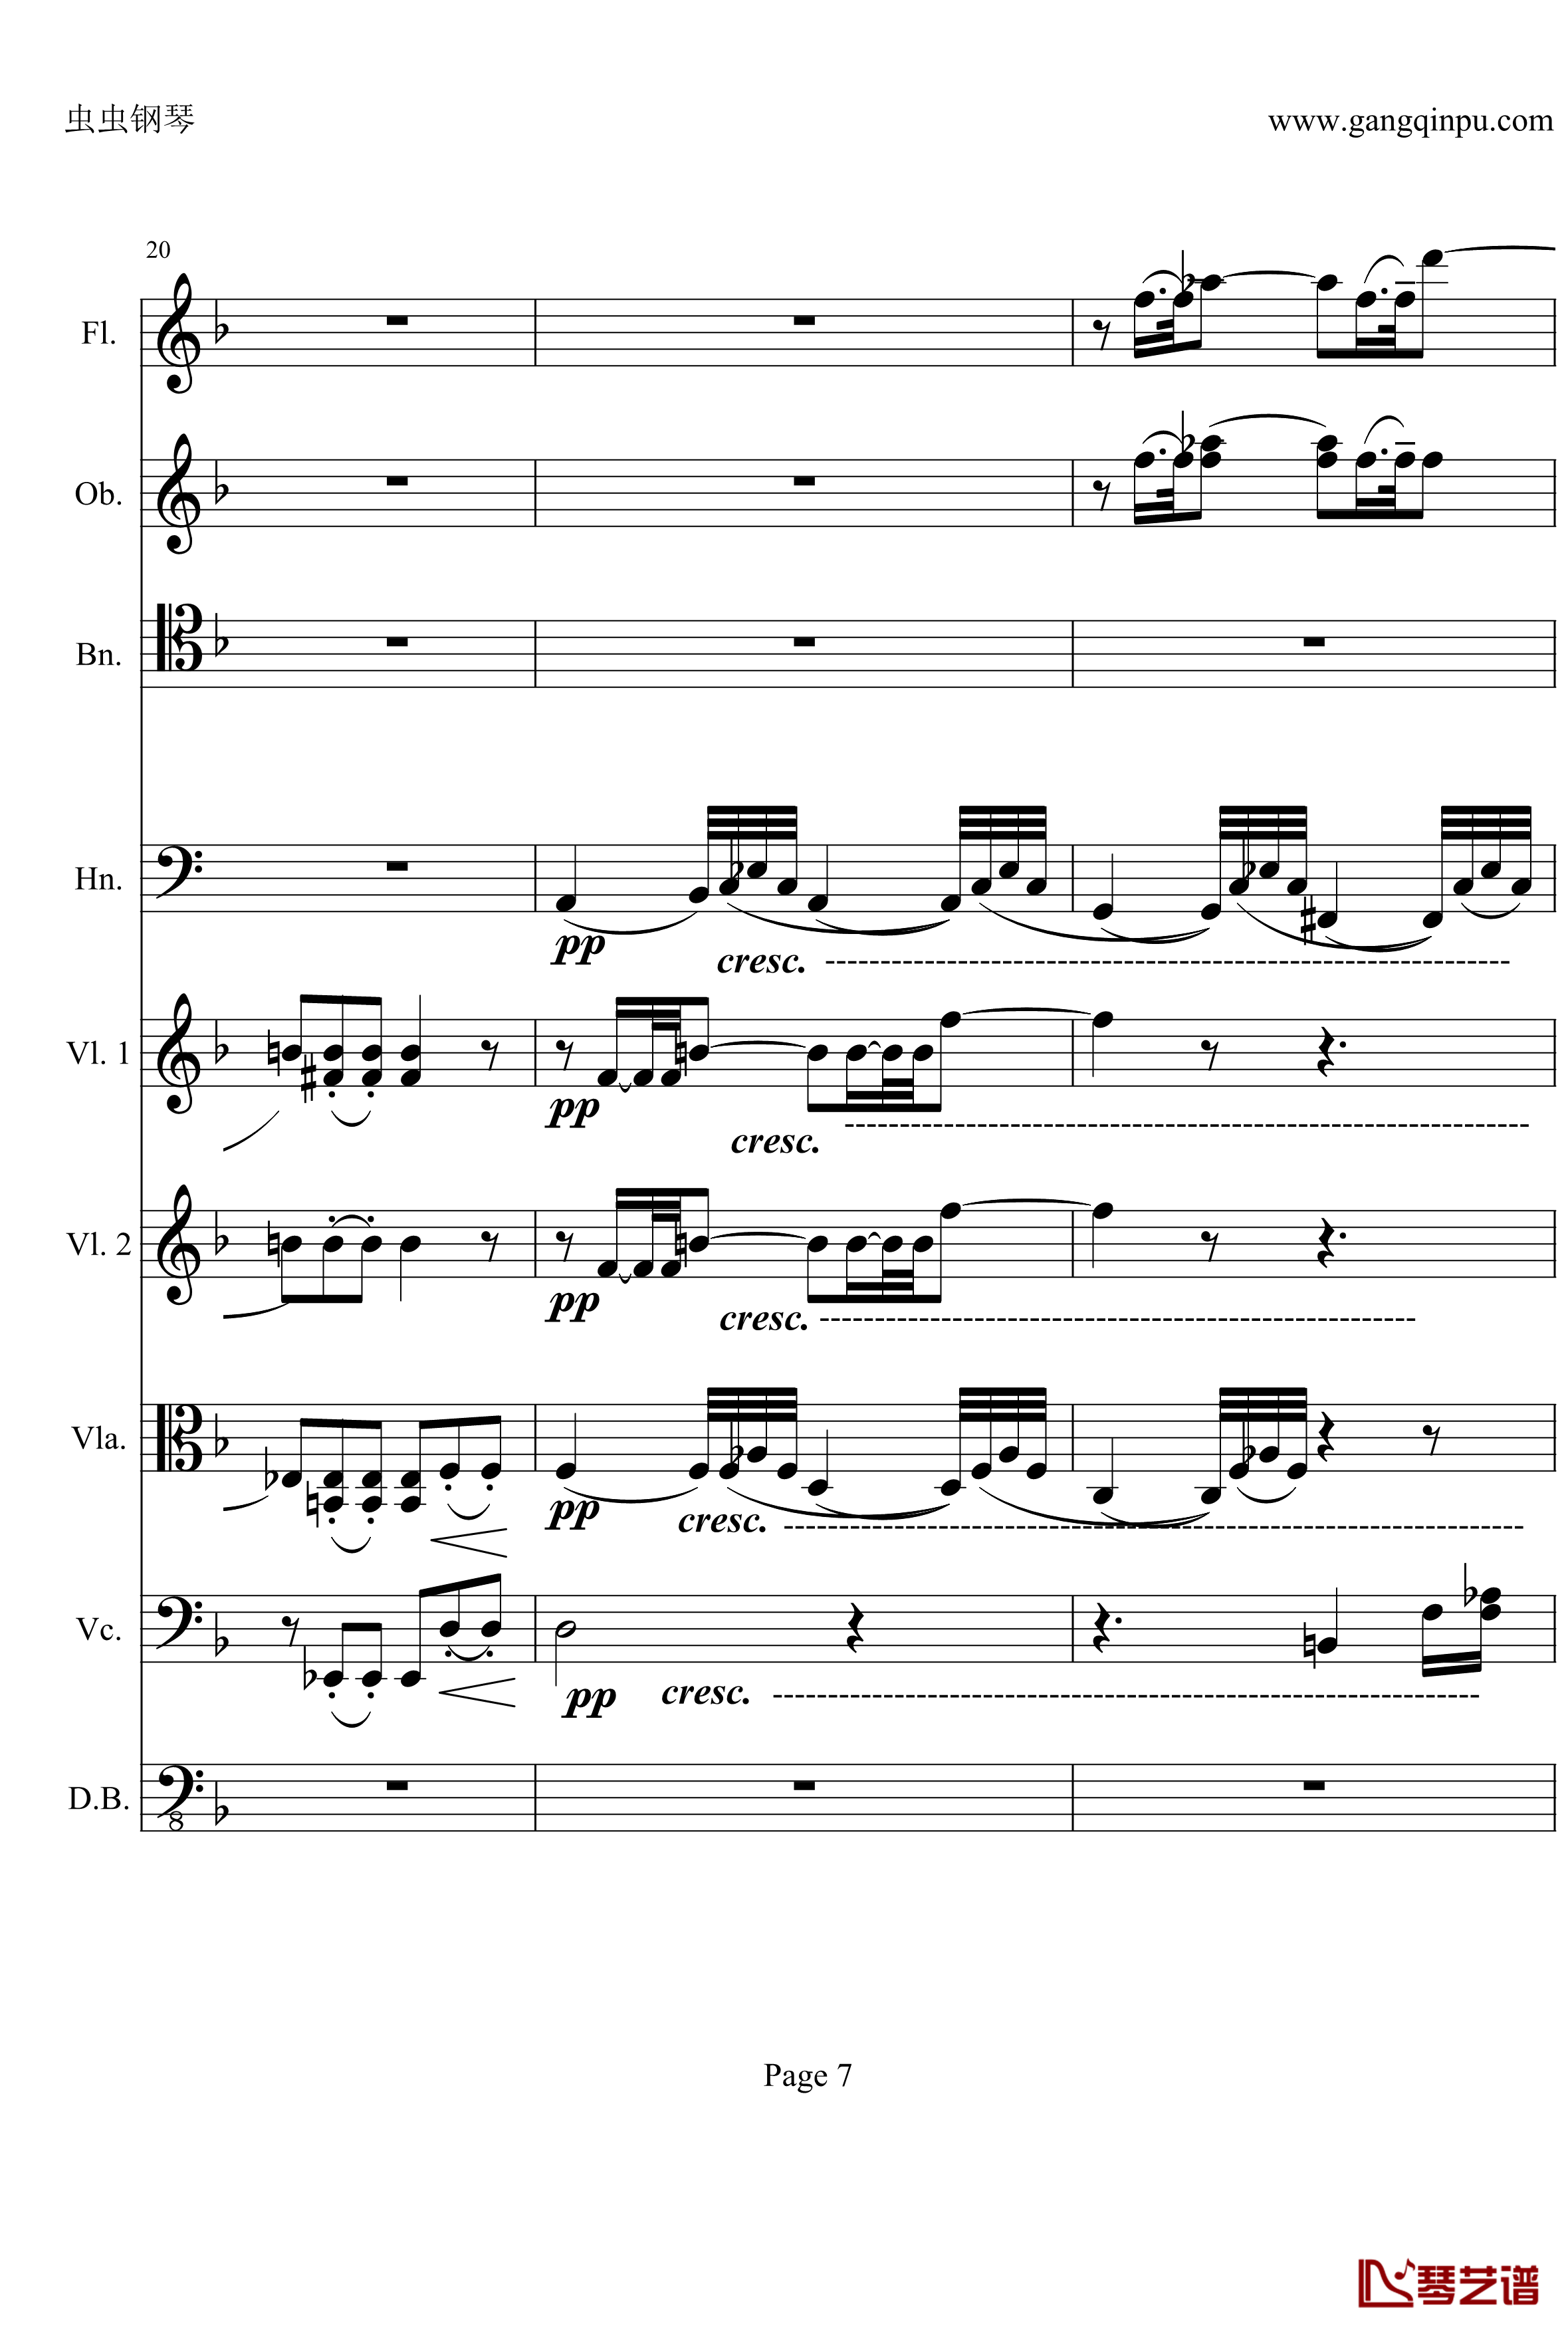 奏鸣曲之交响钢琴谱-第21-Ⅱ-贝多芬-beethoven7